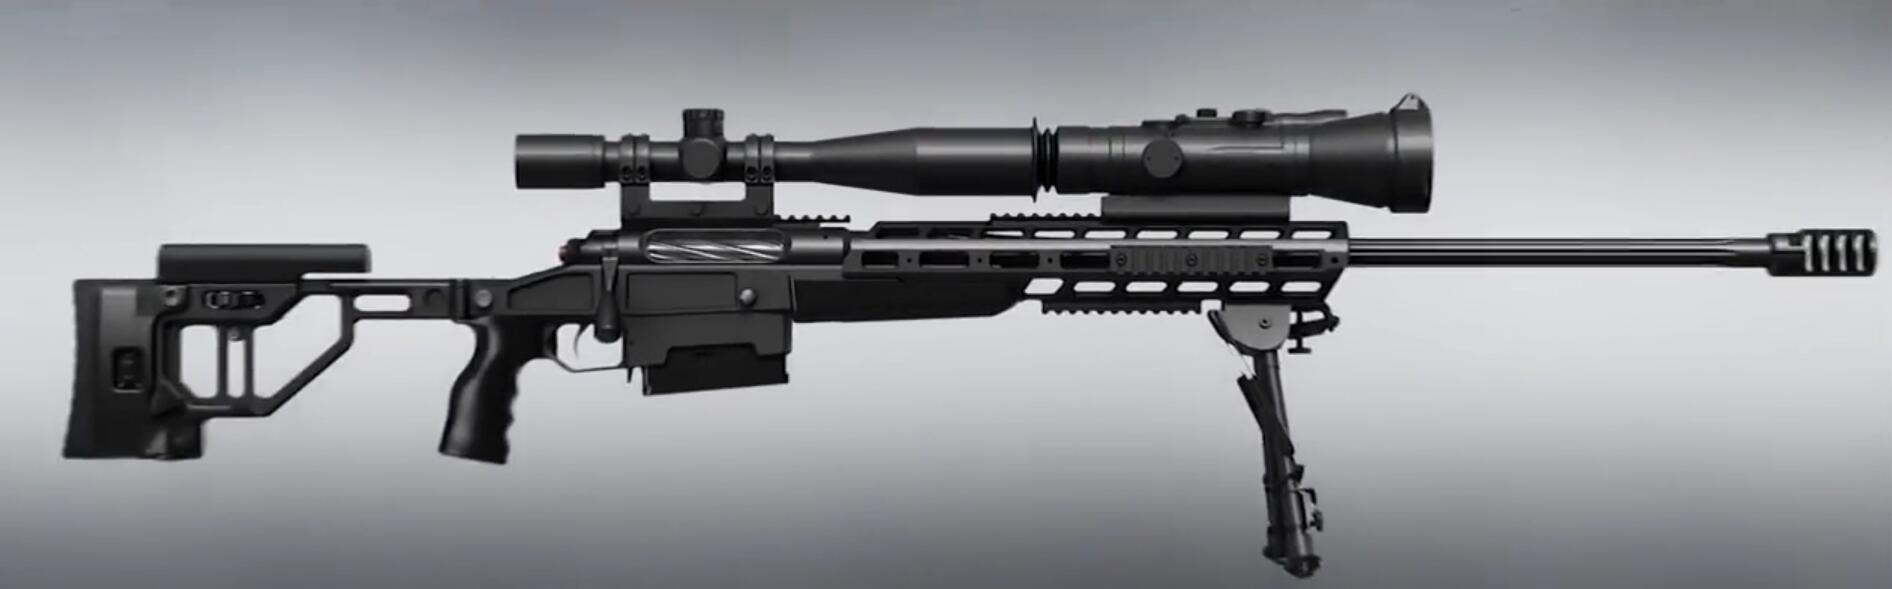 武警特战装备的t5000狙击枪,精度达05moa,今又出新型号